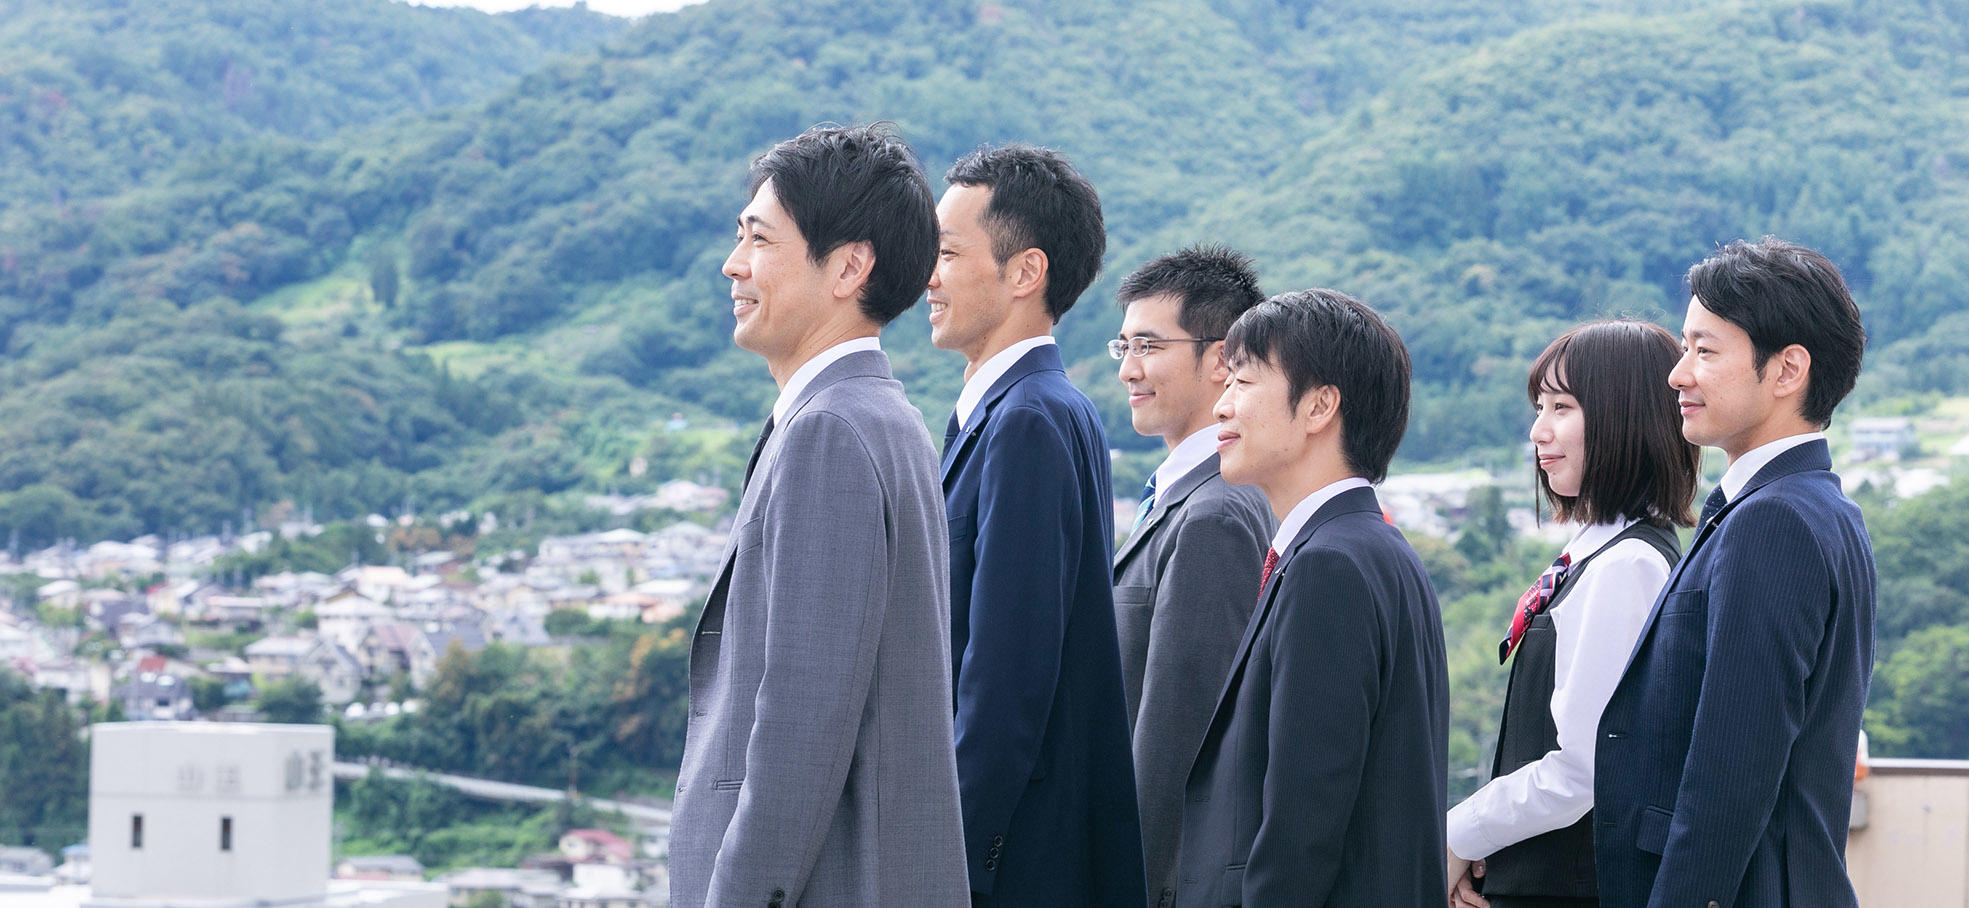 山並みを背景に、長野市街地を望む長野県信連の男性職員5名と女性職員1名の左横顔